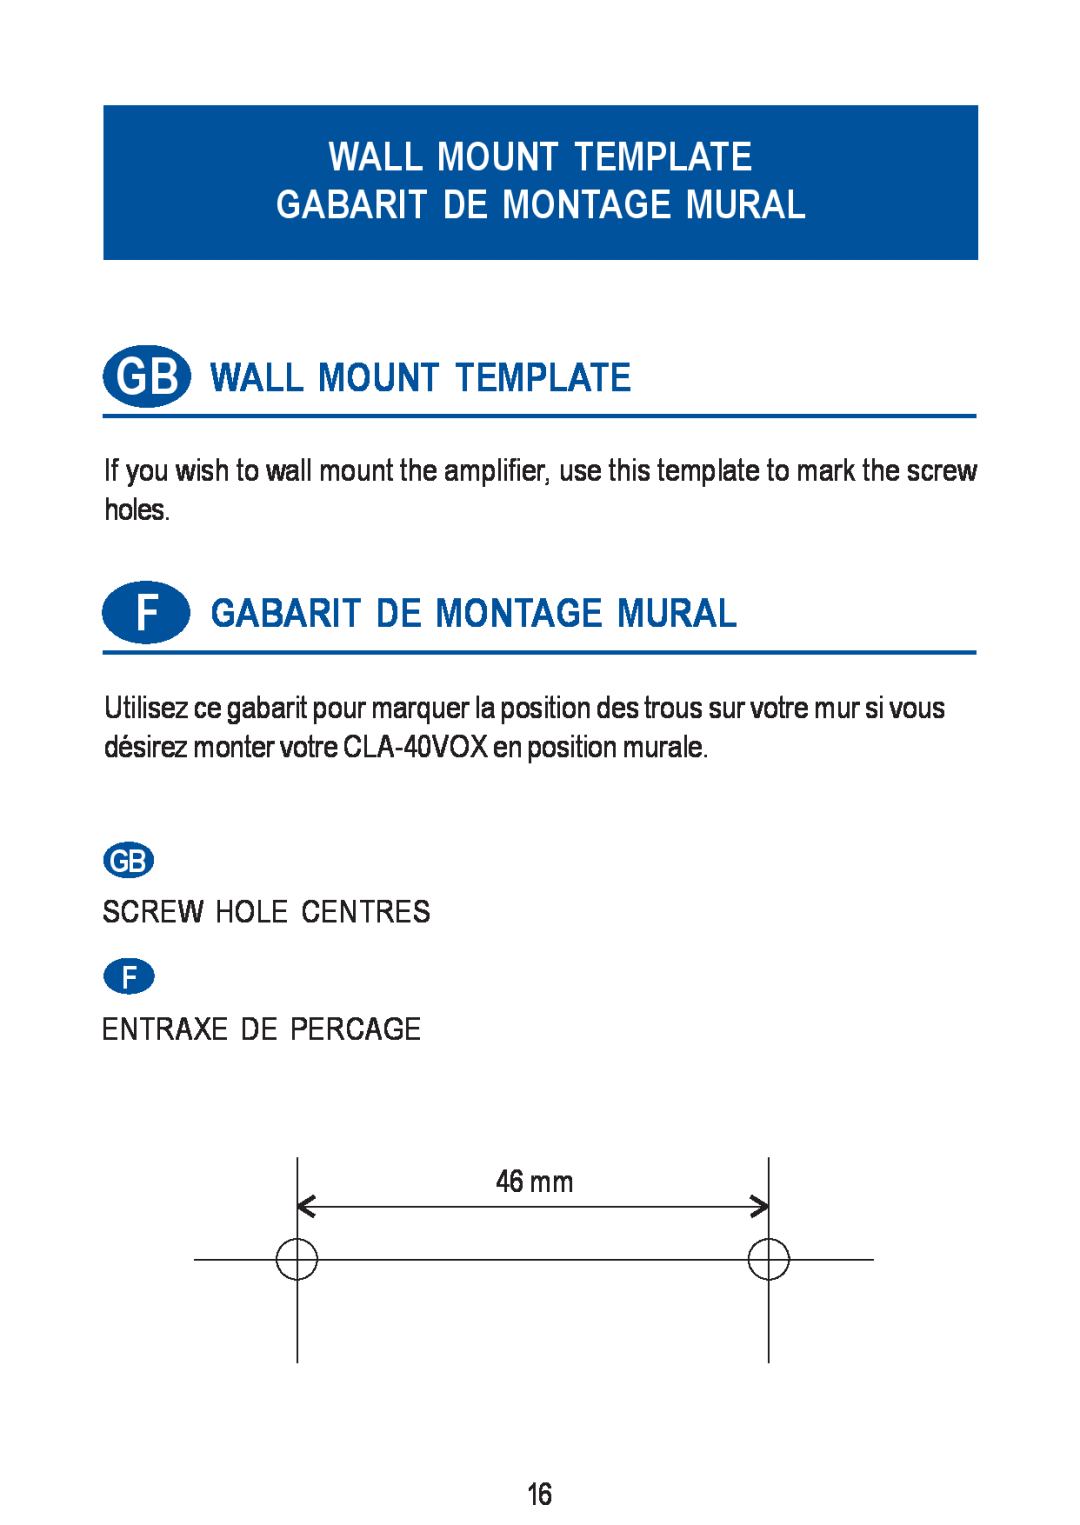 Geemarc CLA-40 VOX manual Wall Mount Template Gabarit De Montage Mural, Gb Wall Mount Template, Fgabarit De Montage Mural 